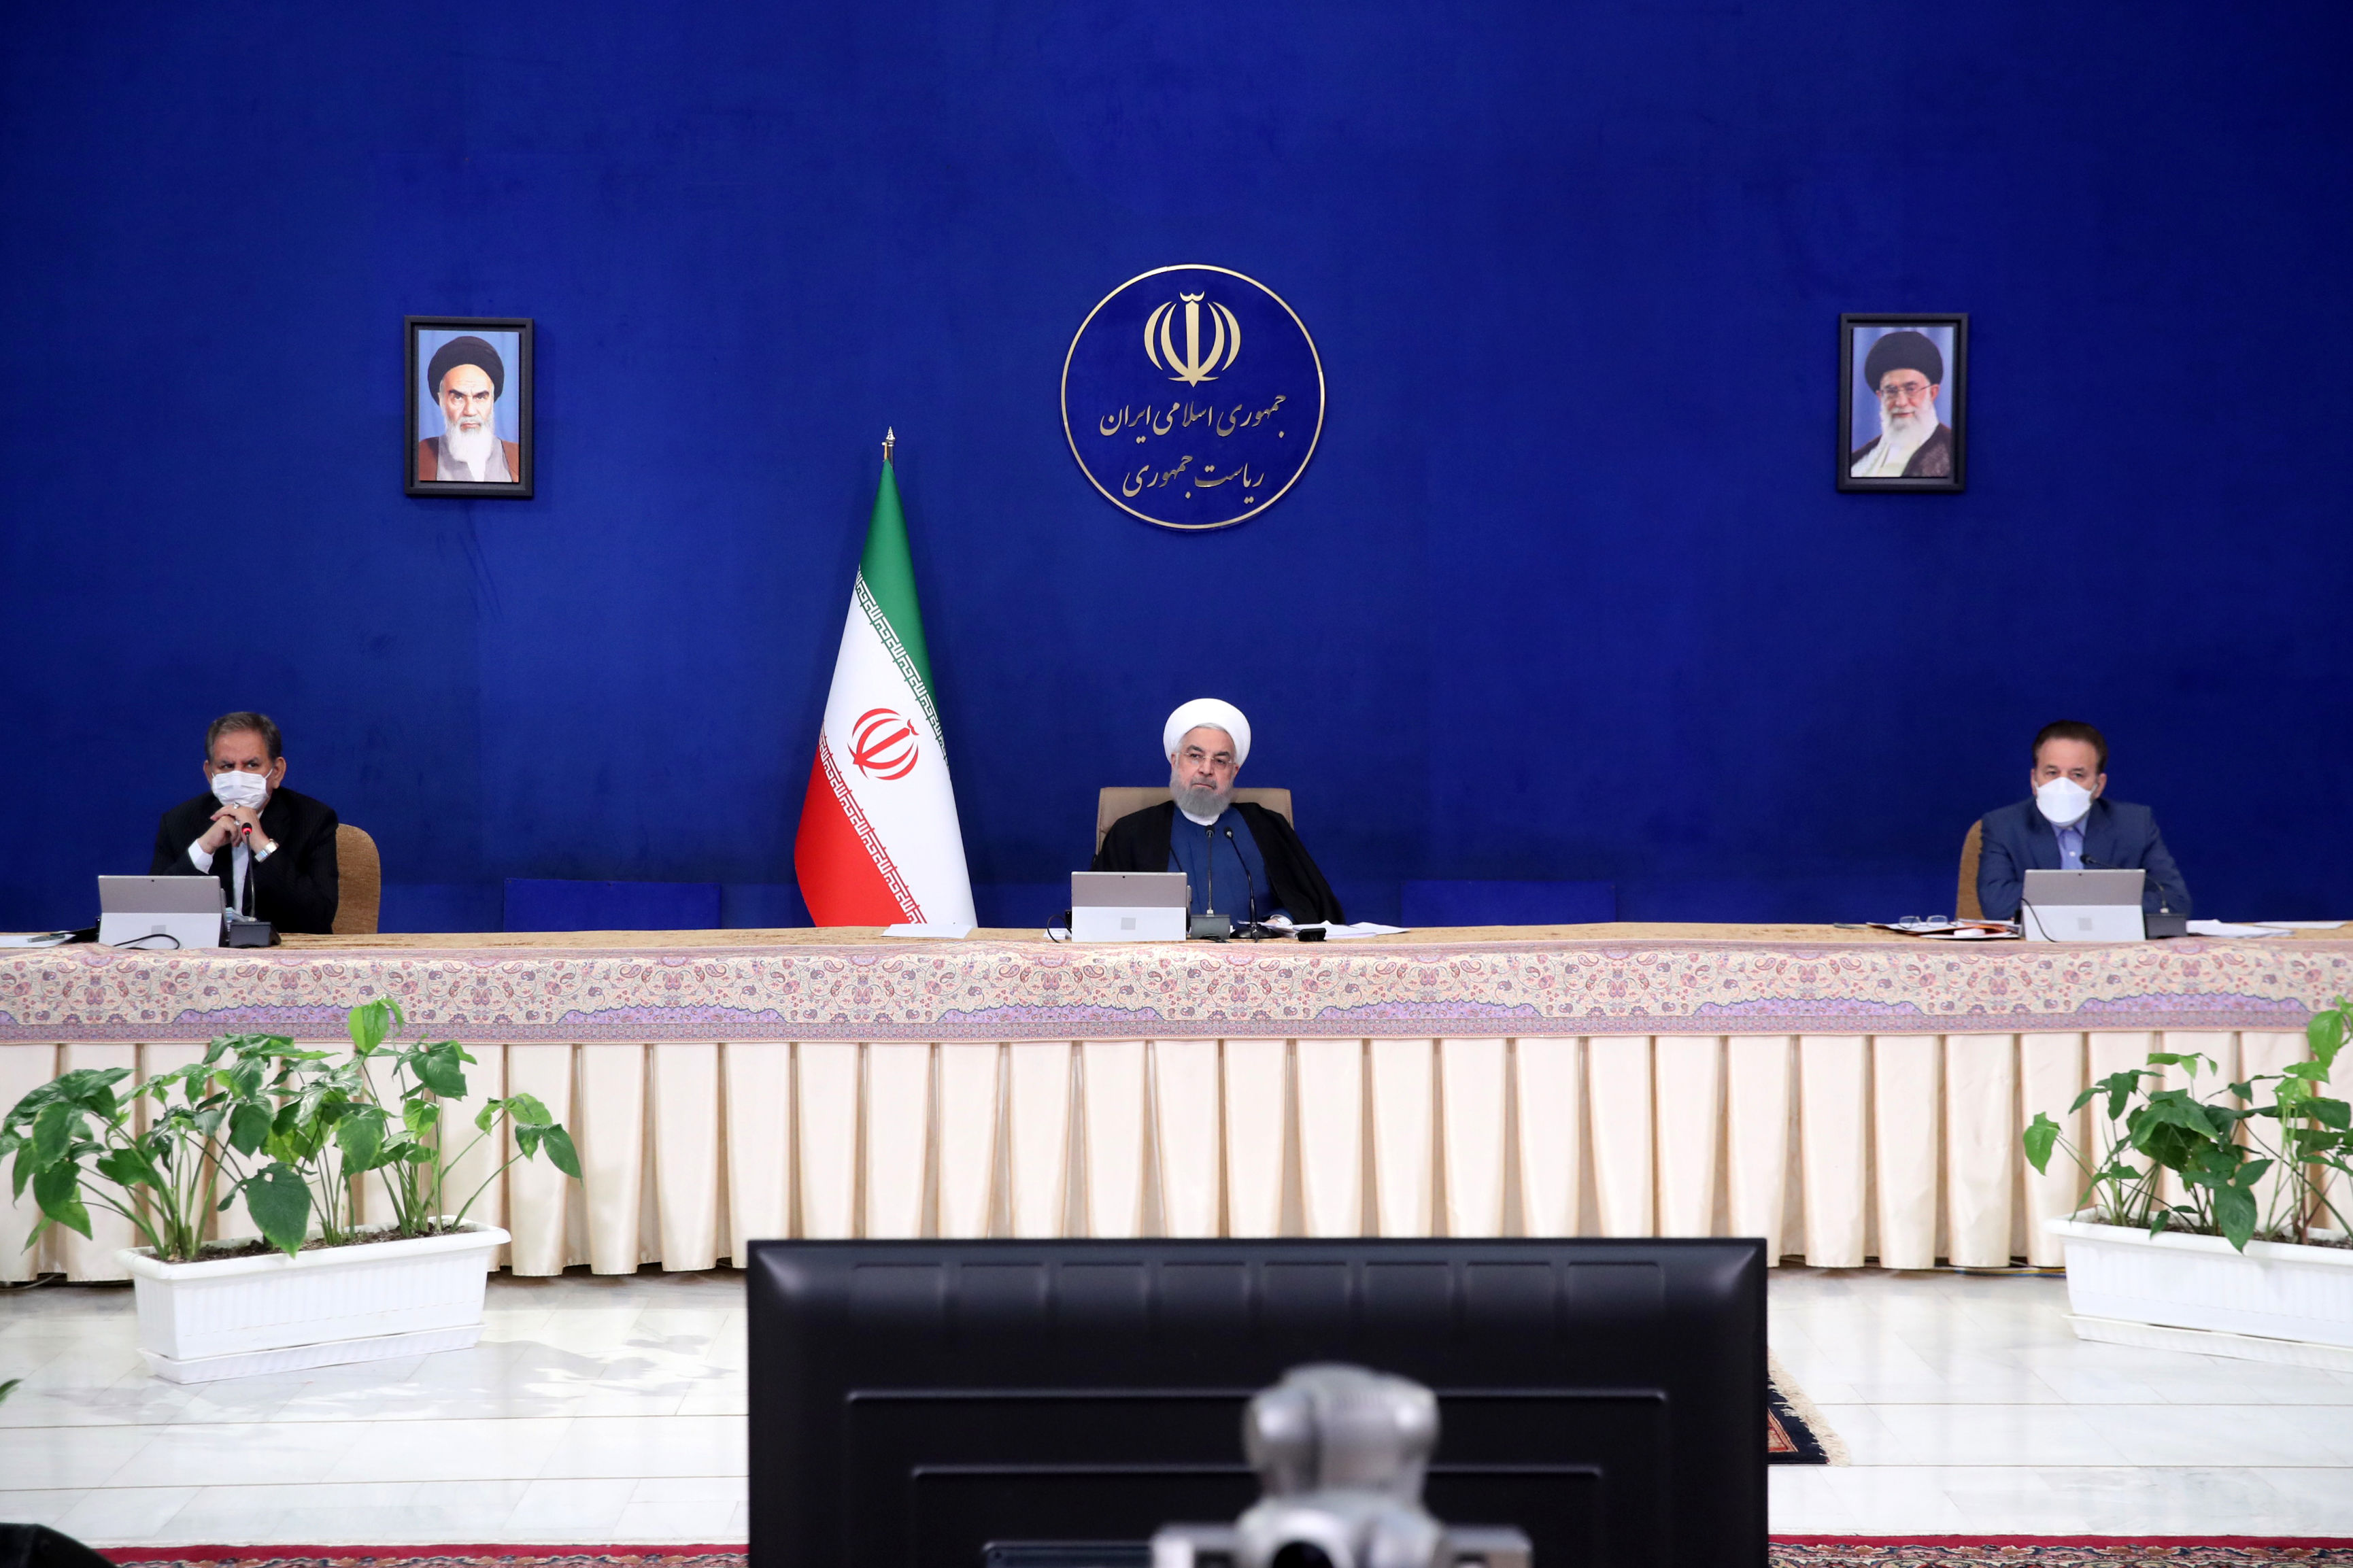 روحانی: آقای صدا و سیما! چرا سوالی درباره جنگ اقتصادی مطرح نکردی؟+ فیلم